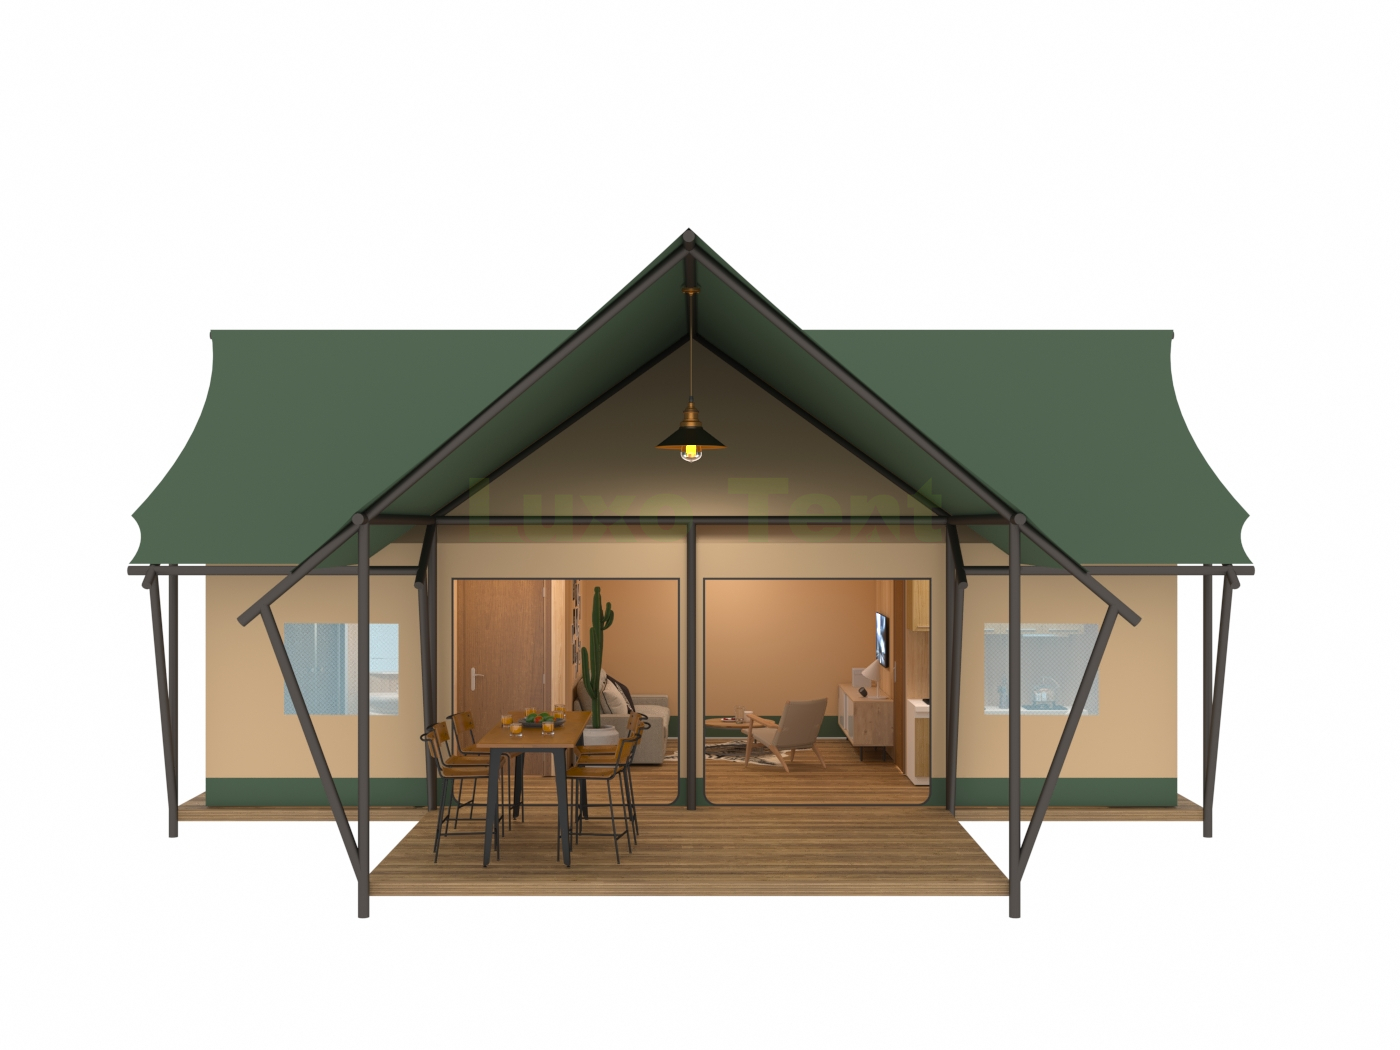 Luksusowy namiot safari w kształcie litery T z sypialnią, łazienką i salonem